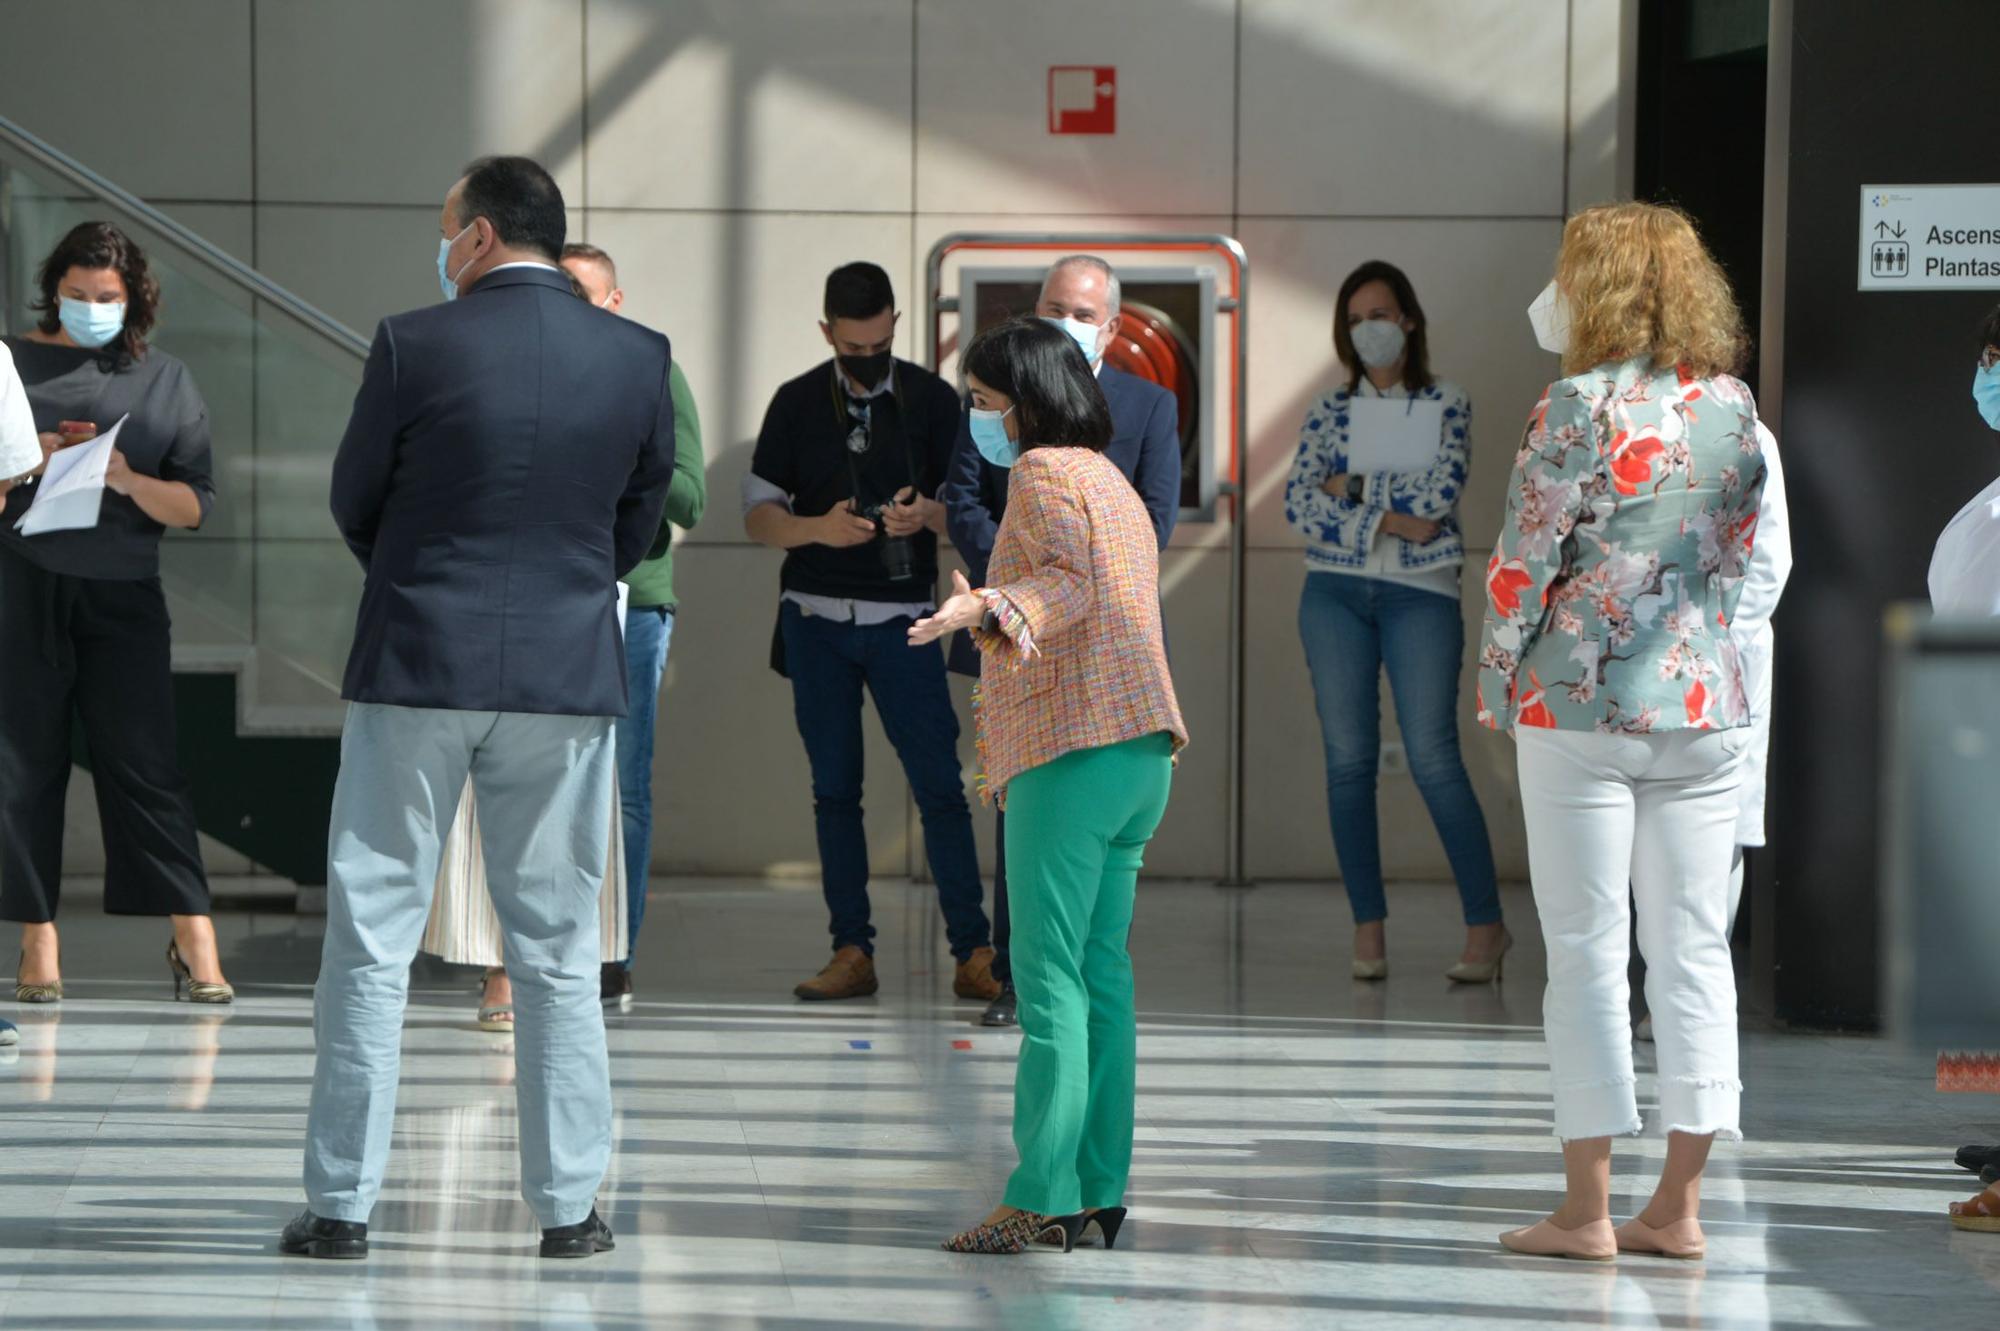 La ministra de Sanidad Carolina Darias visita el Hospital Universitario Insular de Gran Canaria